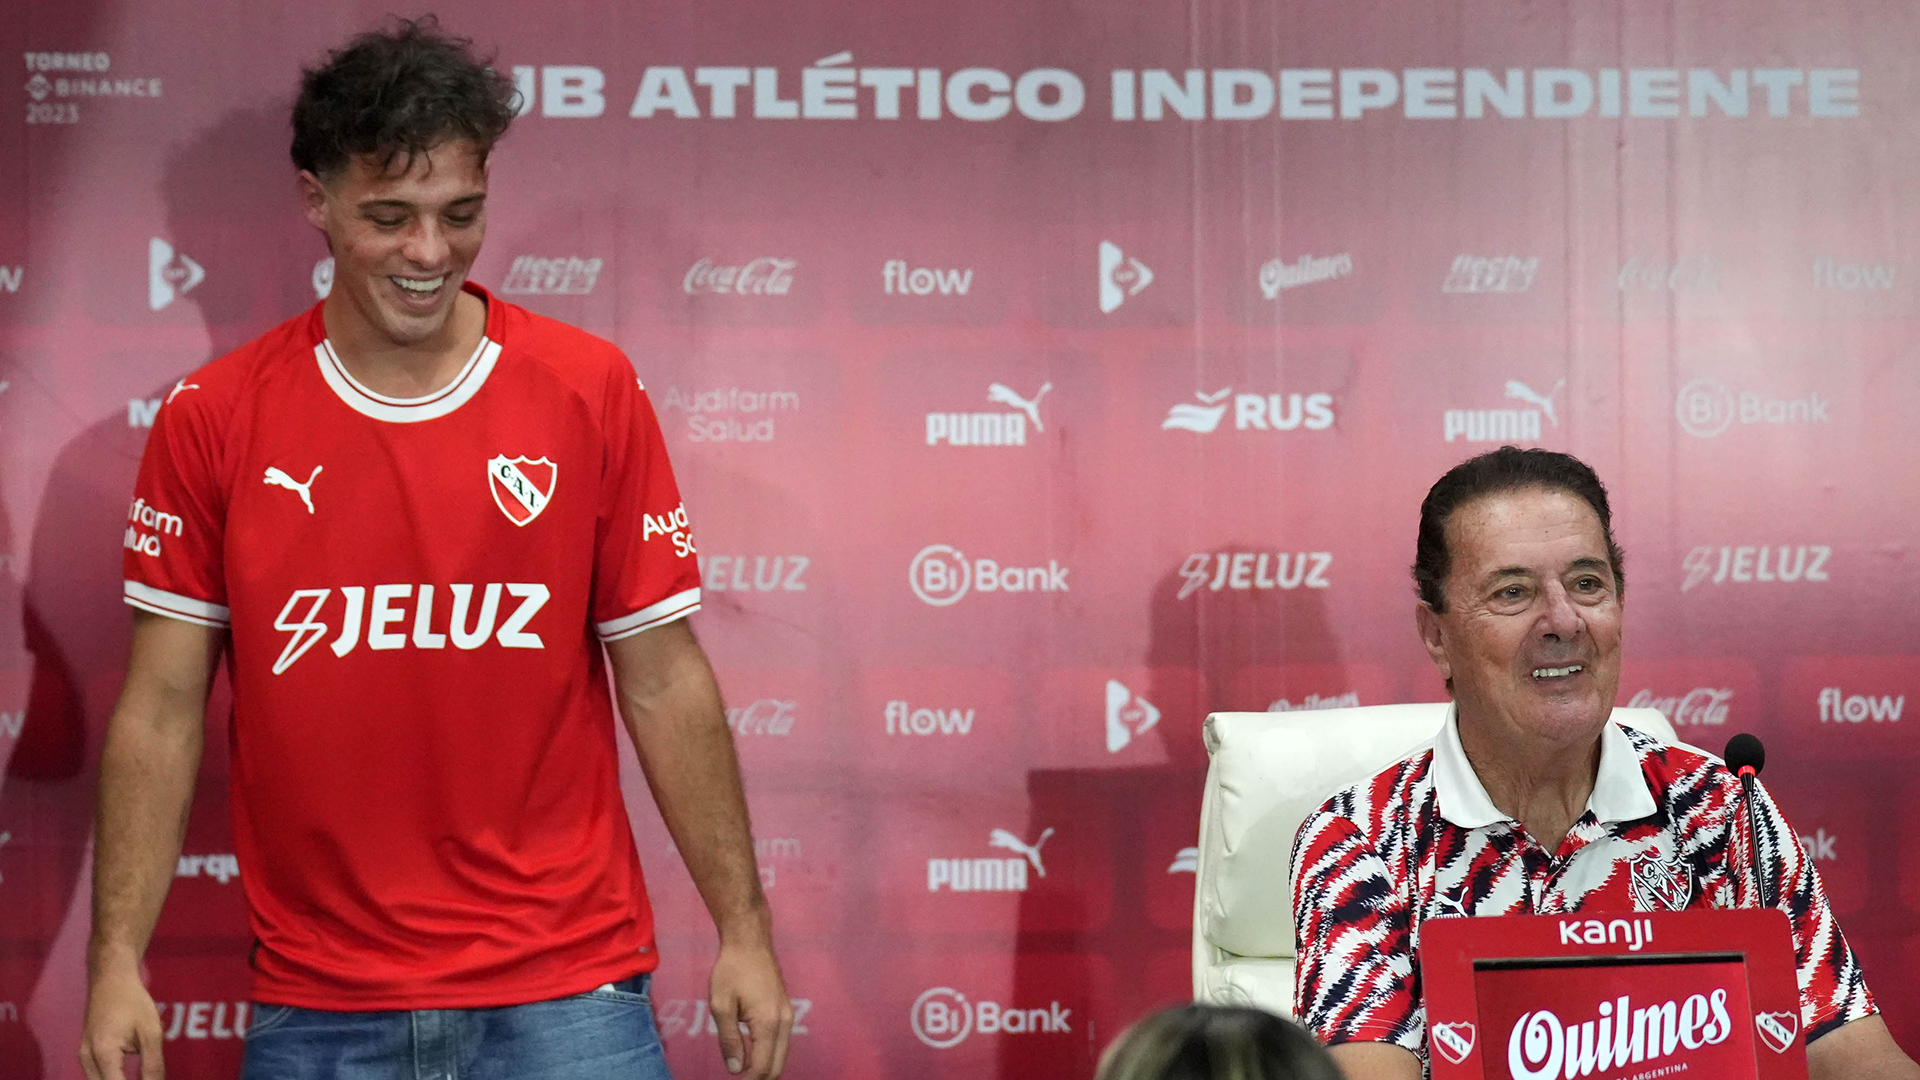 La colecta de Santiago Maratea en Independiente ya superó los 400 millones de pesos